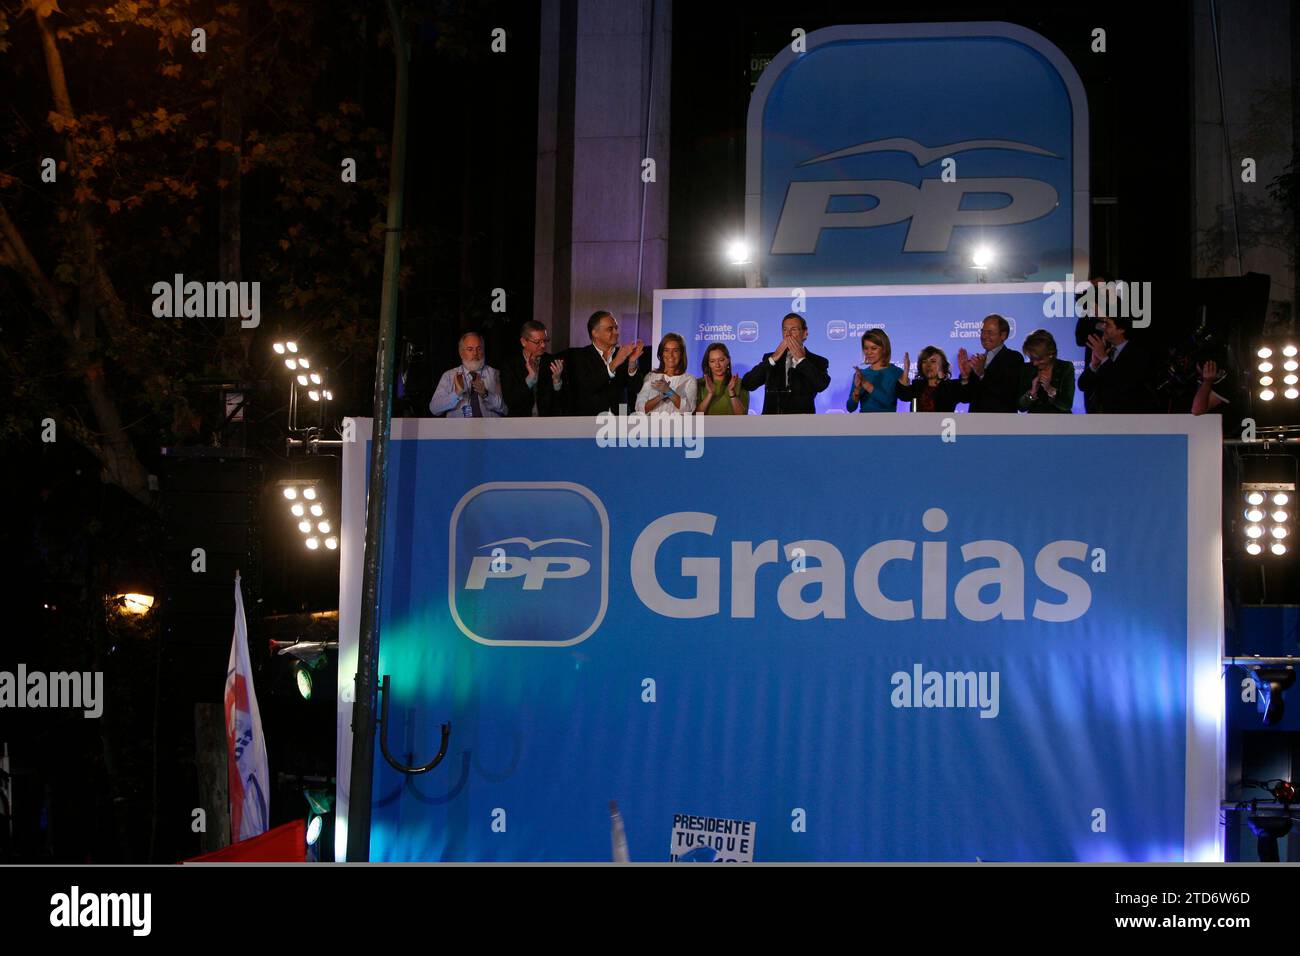 Madrid, November 20, 2011. PP Elections. Photo: Ignacio Gil / Angel de Antonio. Credit: Album / Archivo ABC / Ángel de Antonio,Ignacio Gil Stock Photo